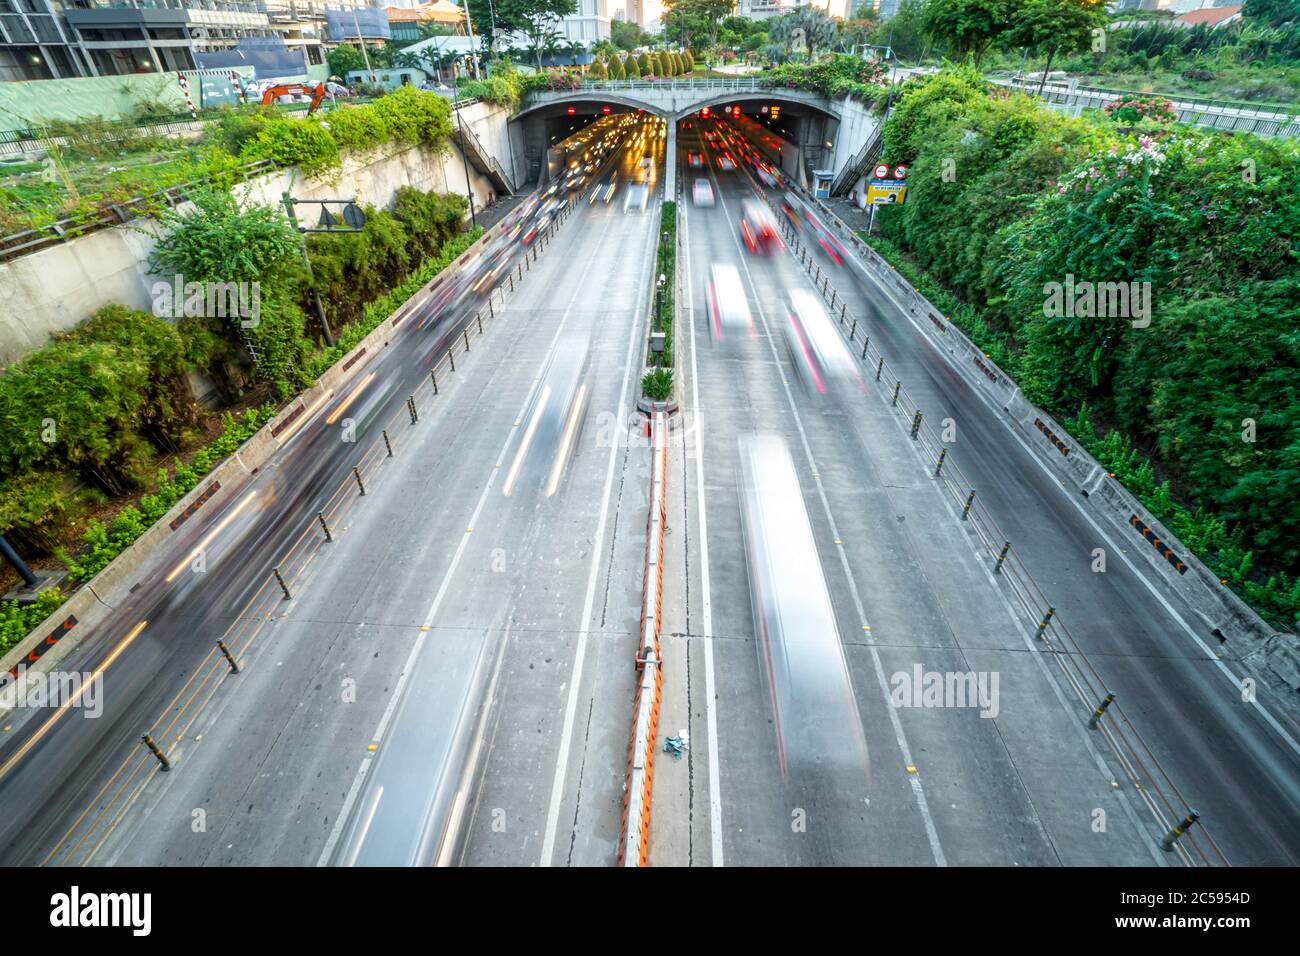 THU THIEM UNDERGROUND ROAD TUNNEL, VIETNAM Stock Photo